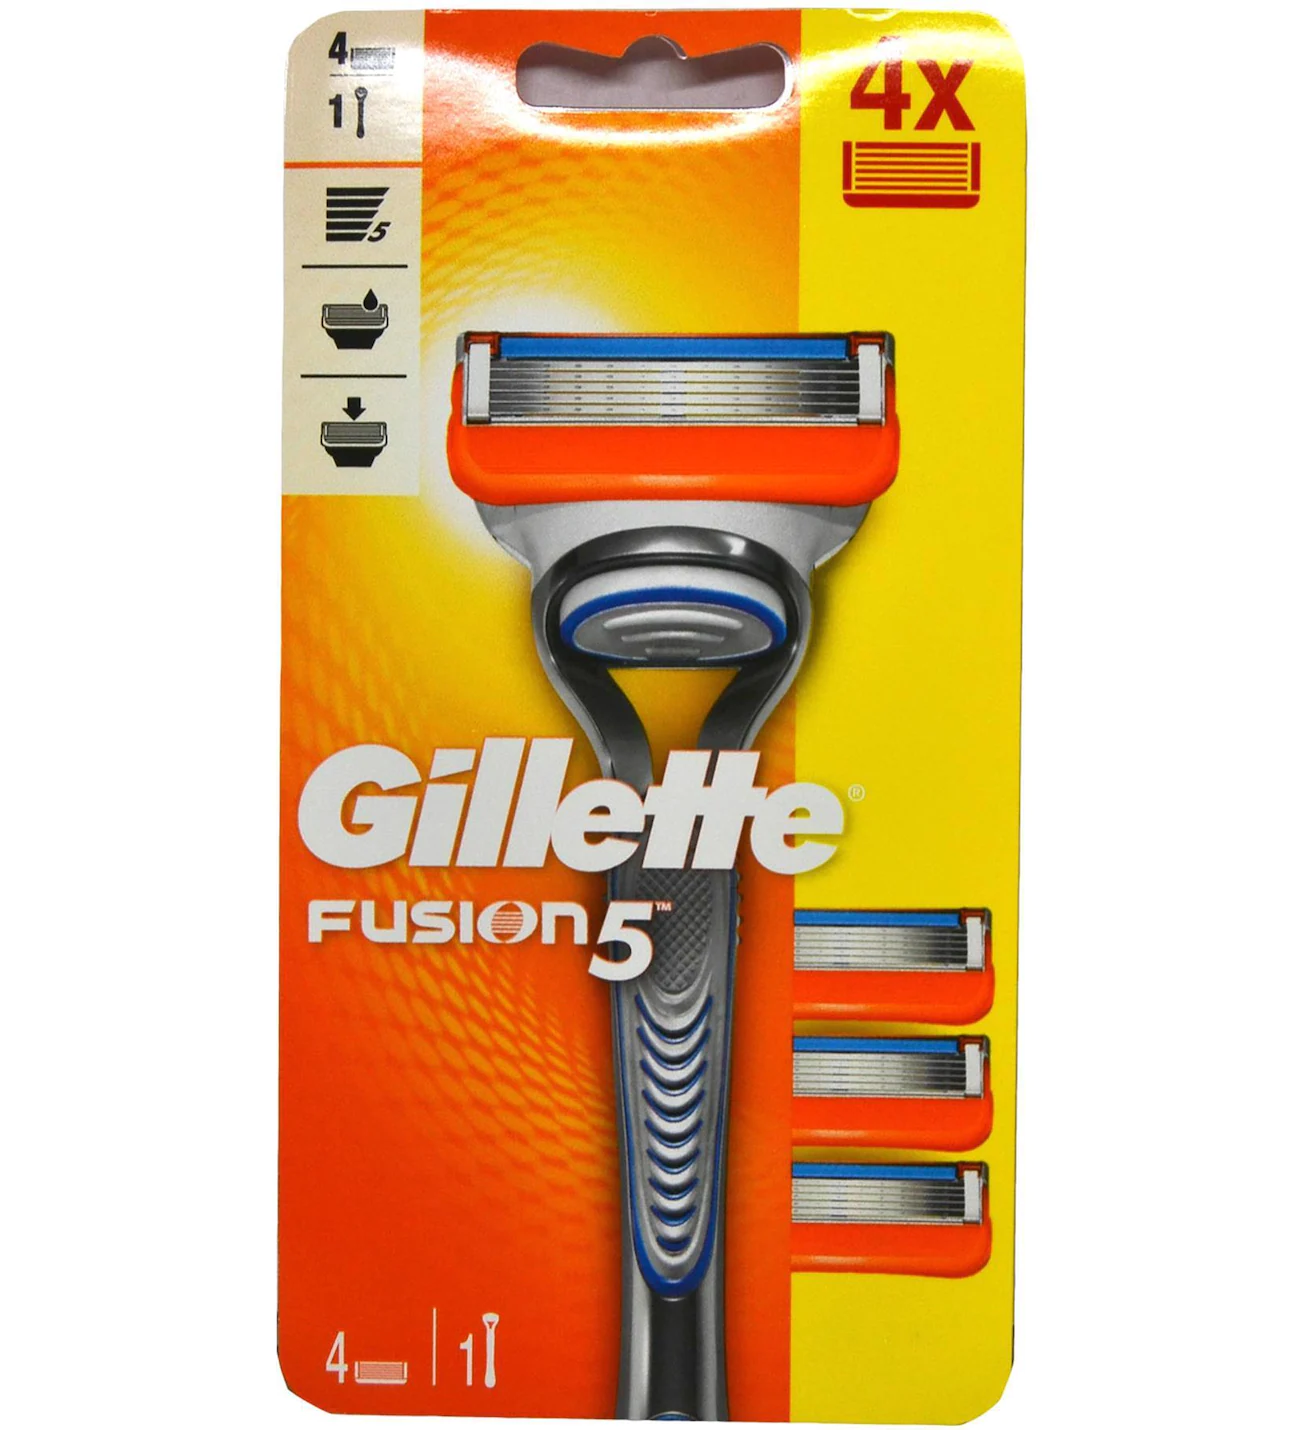 Gillette - Gillette Fusion 5 Tıraş Makinesi 4 Yedek Bıçak